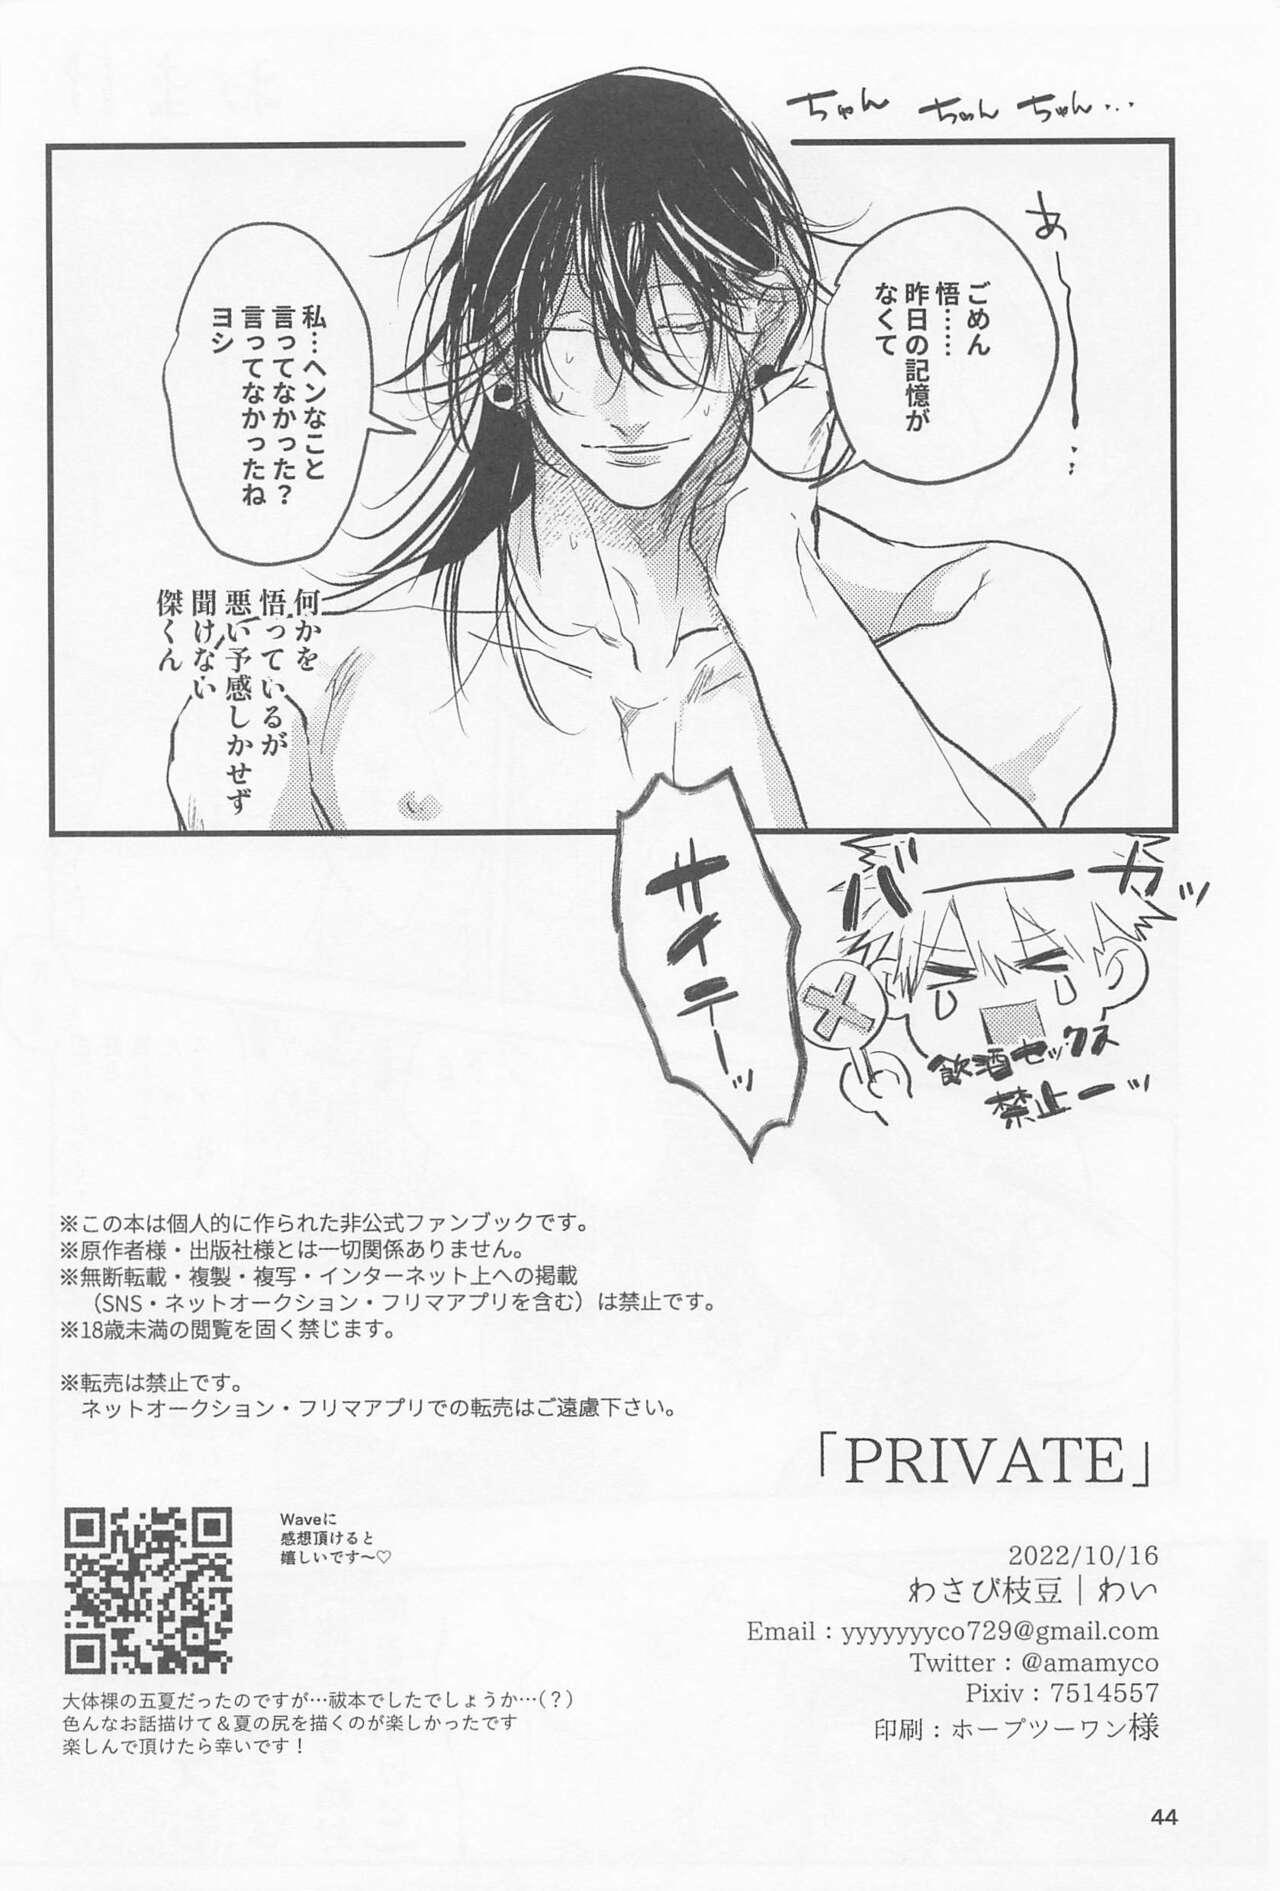 Strip PRIVATE - Jujutsu kaisen Muslim - Page 43